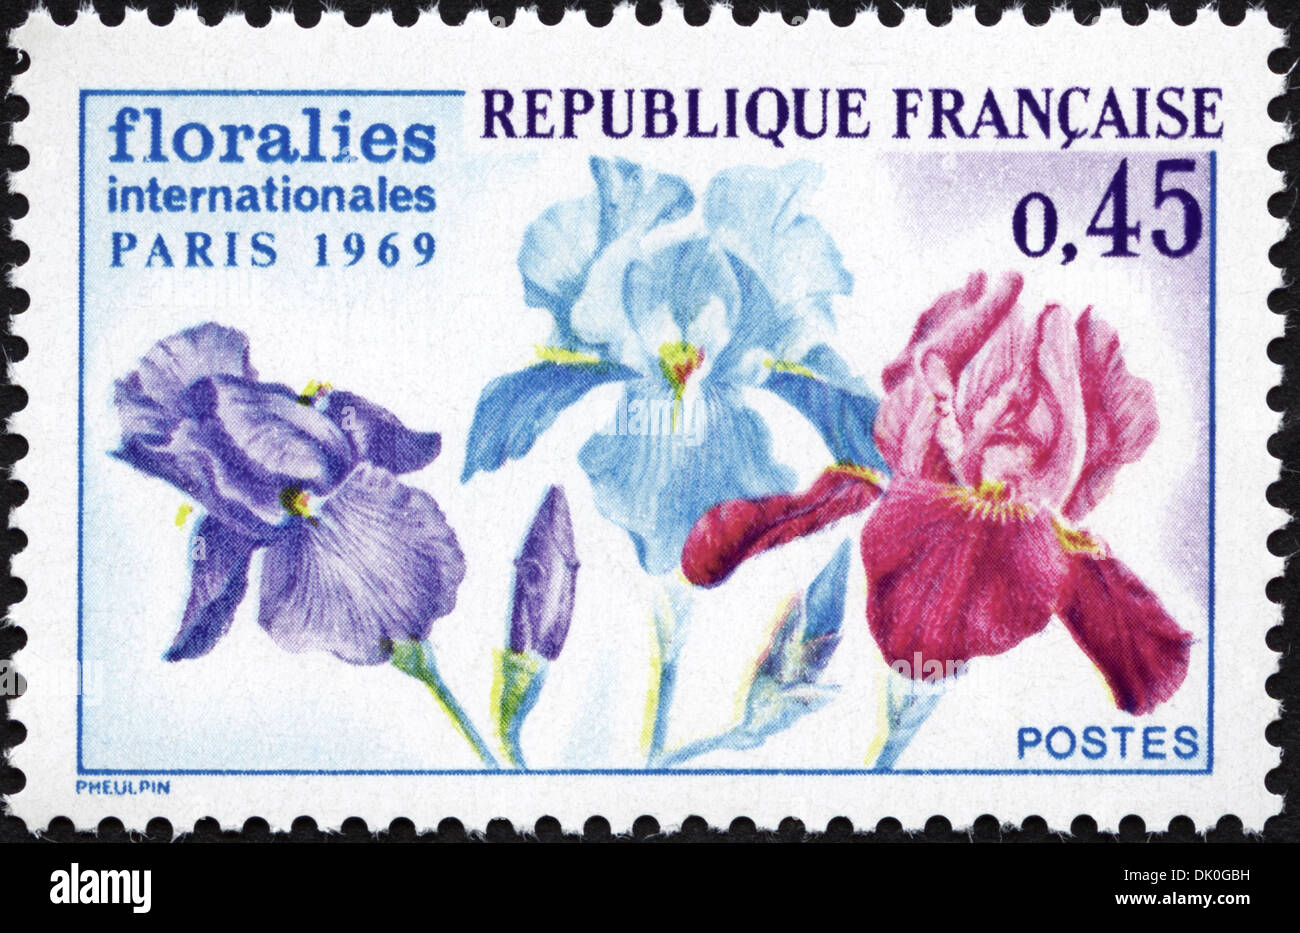 Francobollo Repubblica francese 0,45 con motivi floreali International Exhibition 1969 rilasciato 1969 Foto Stock